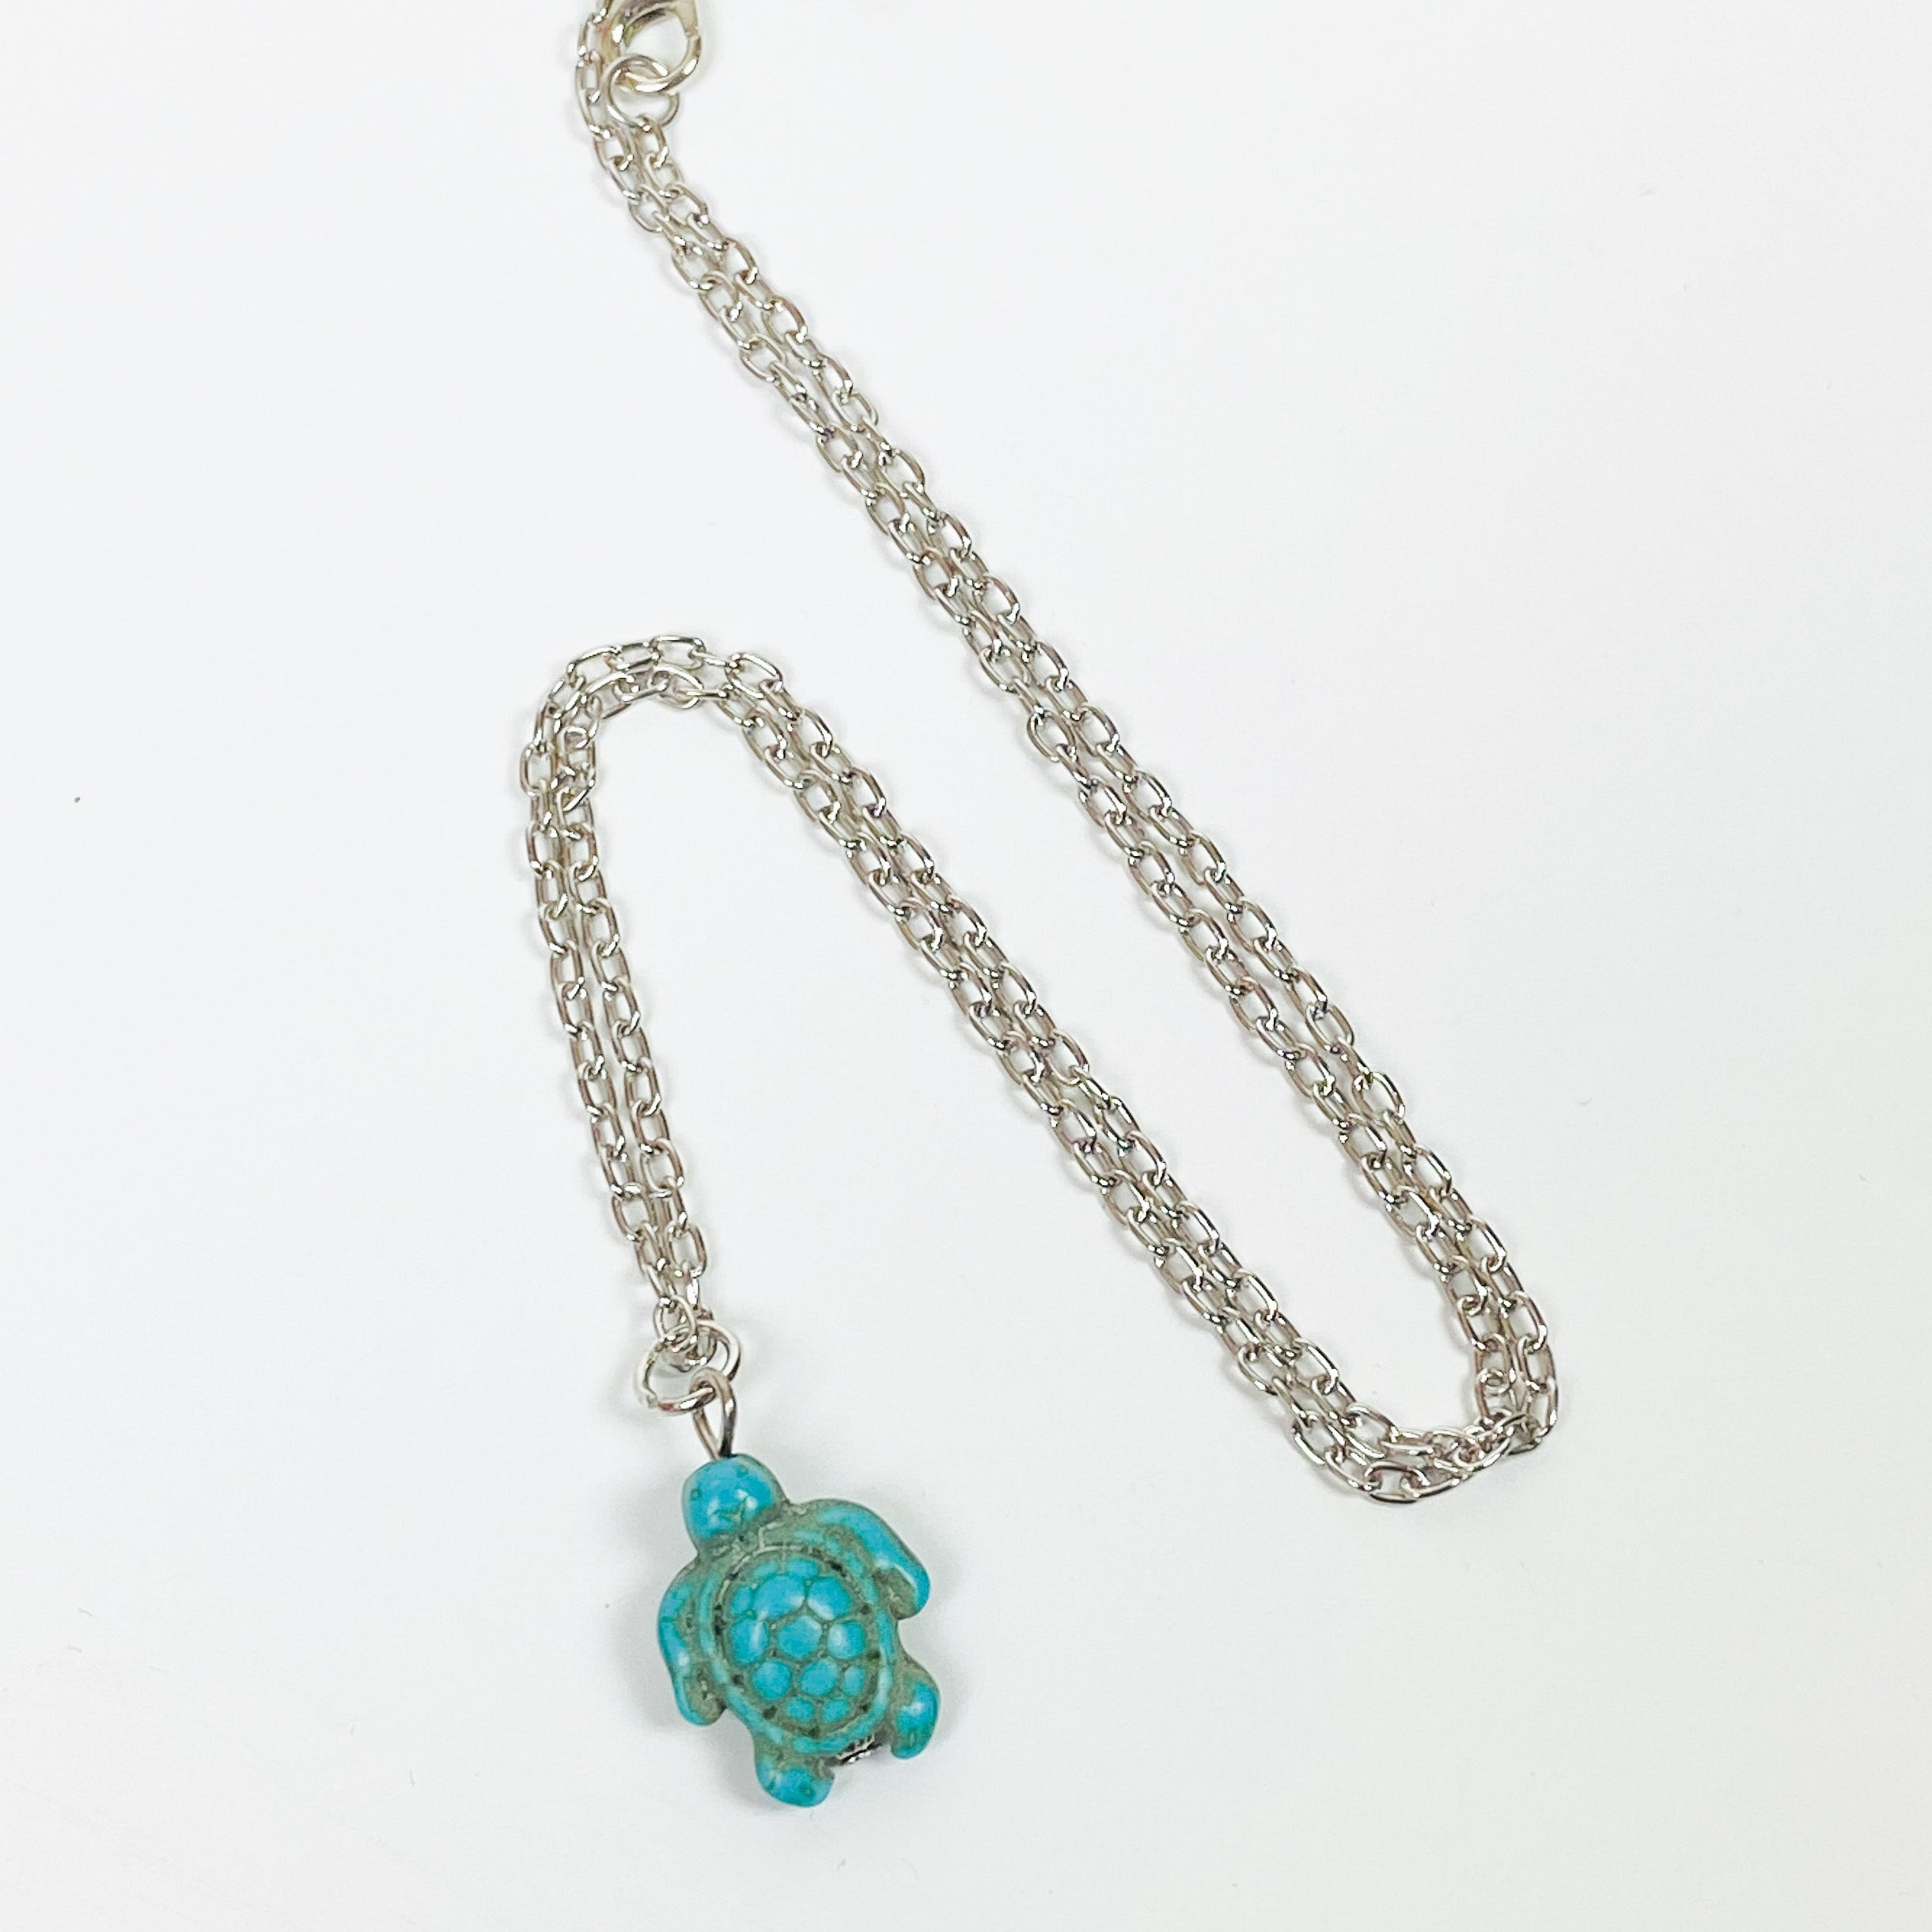 Retro Shark Necklace Chain Silver